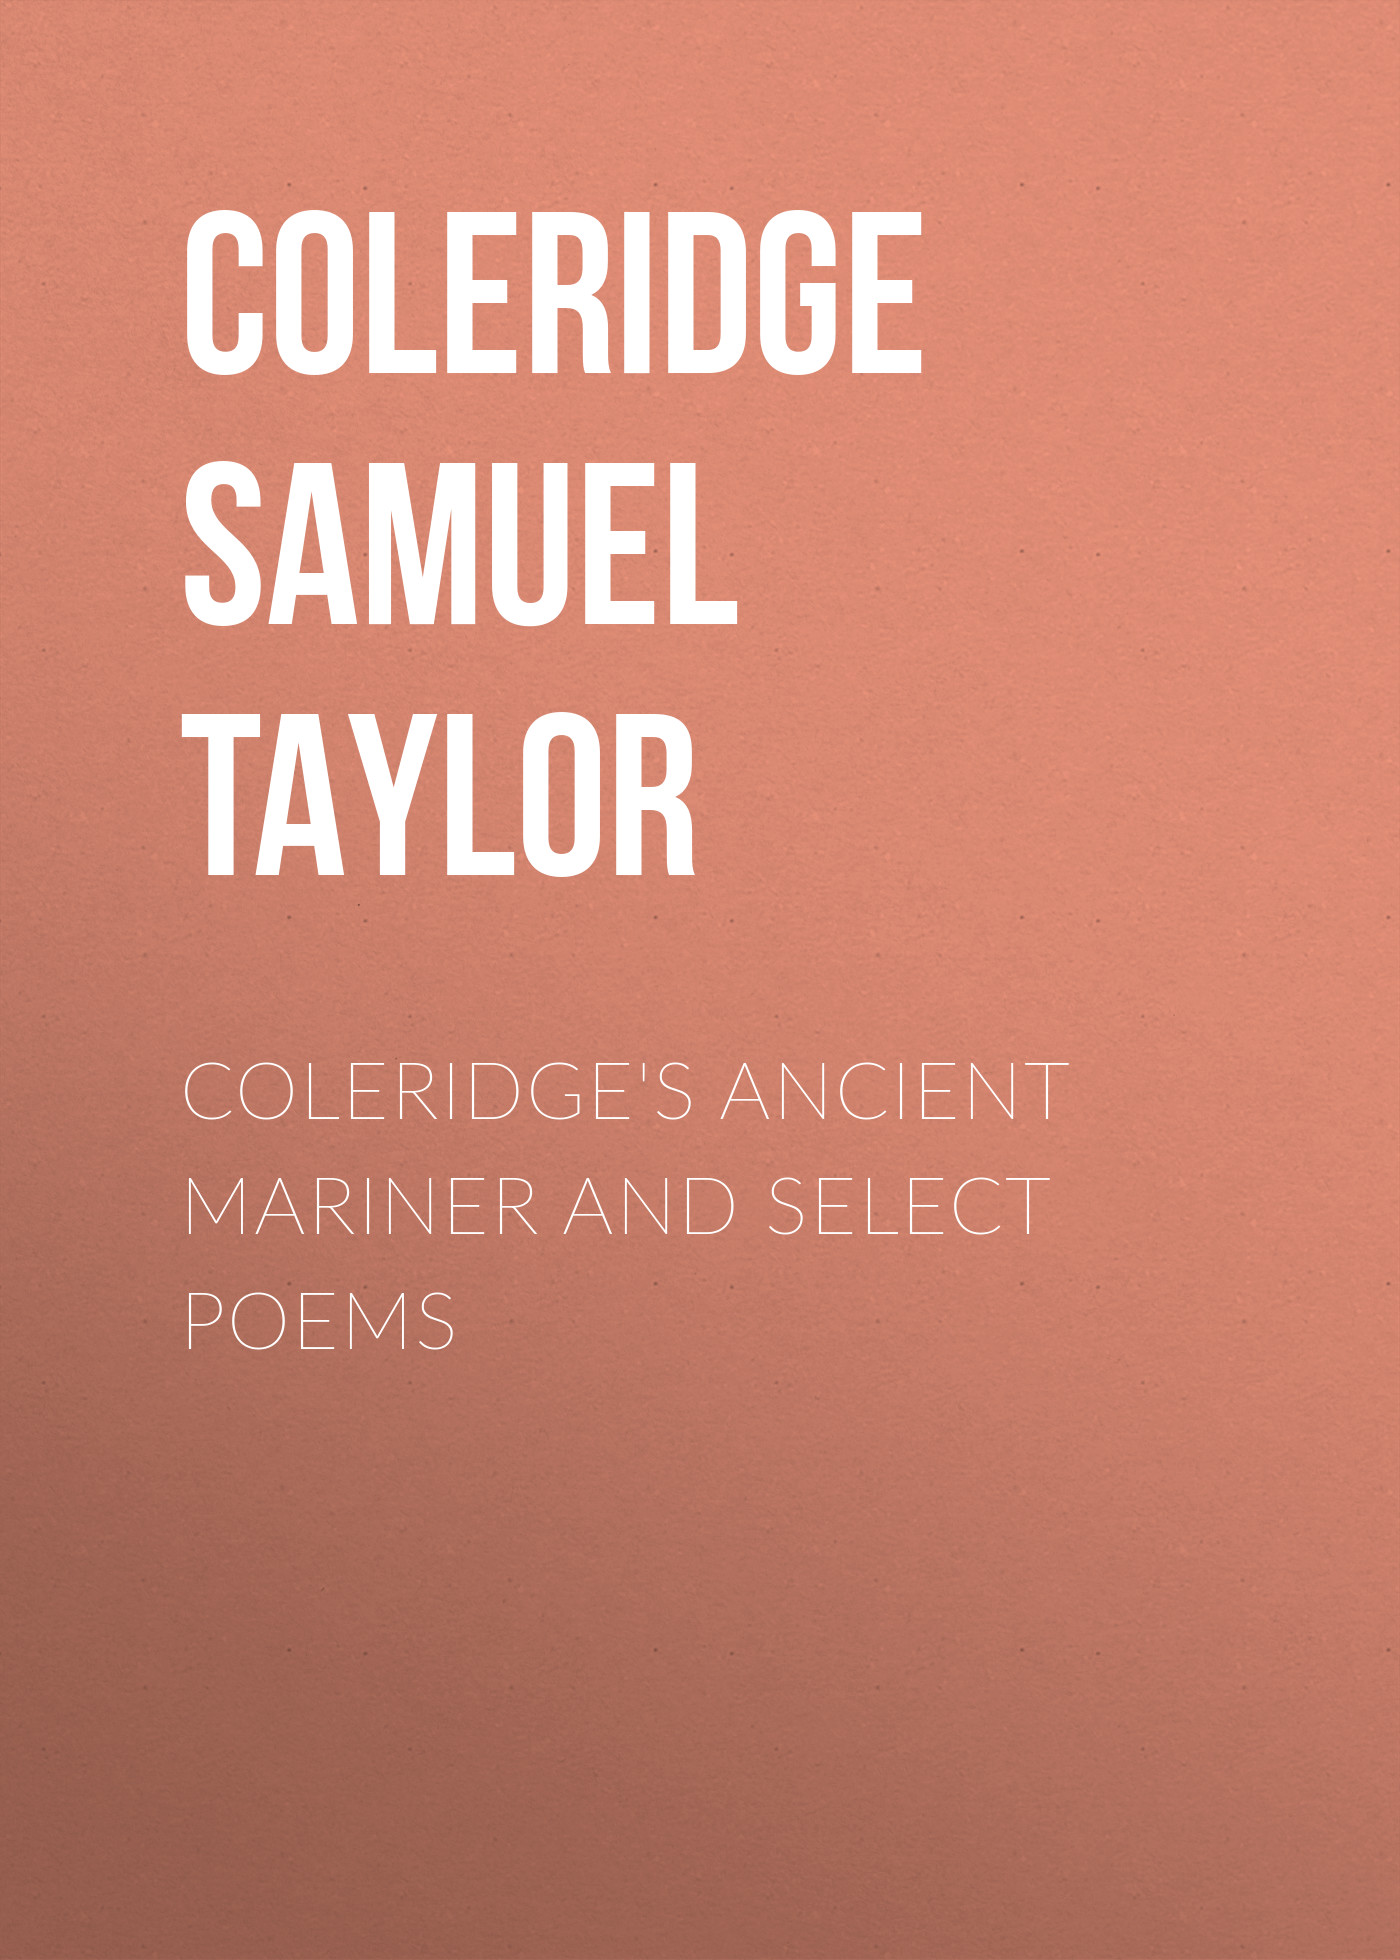 Книга Coleridge's Ancient Mariner and Select Poems из серии , созданная Samuel Coleridge, может относится к жанру Зарубежные стихи, Поэзия, Зарубежная старинная литература, Зарубежная классика. Стоимость электронной книги Coleridge's Ancient Mariner and Select Poems с идентификатором 34837982 составляет 0 руб.